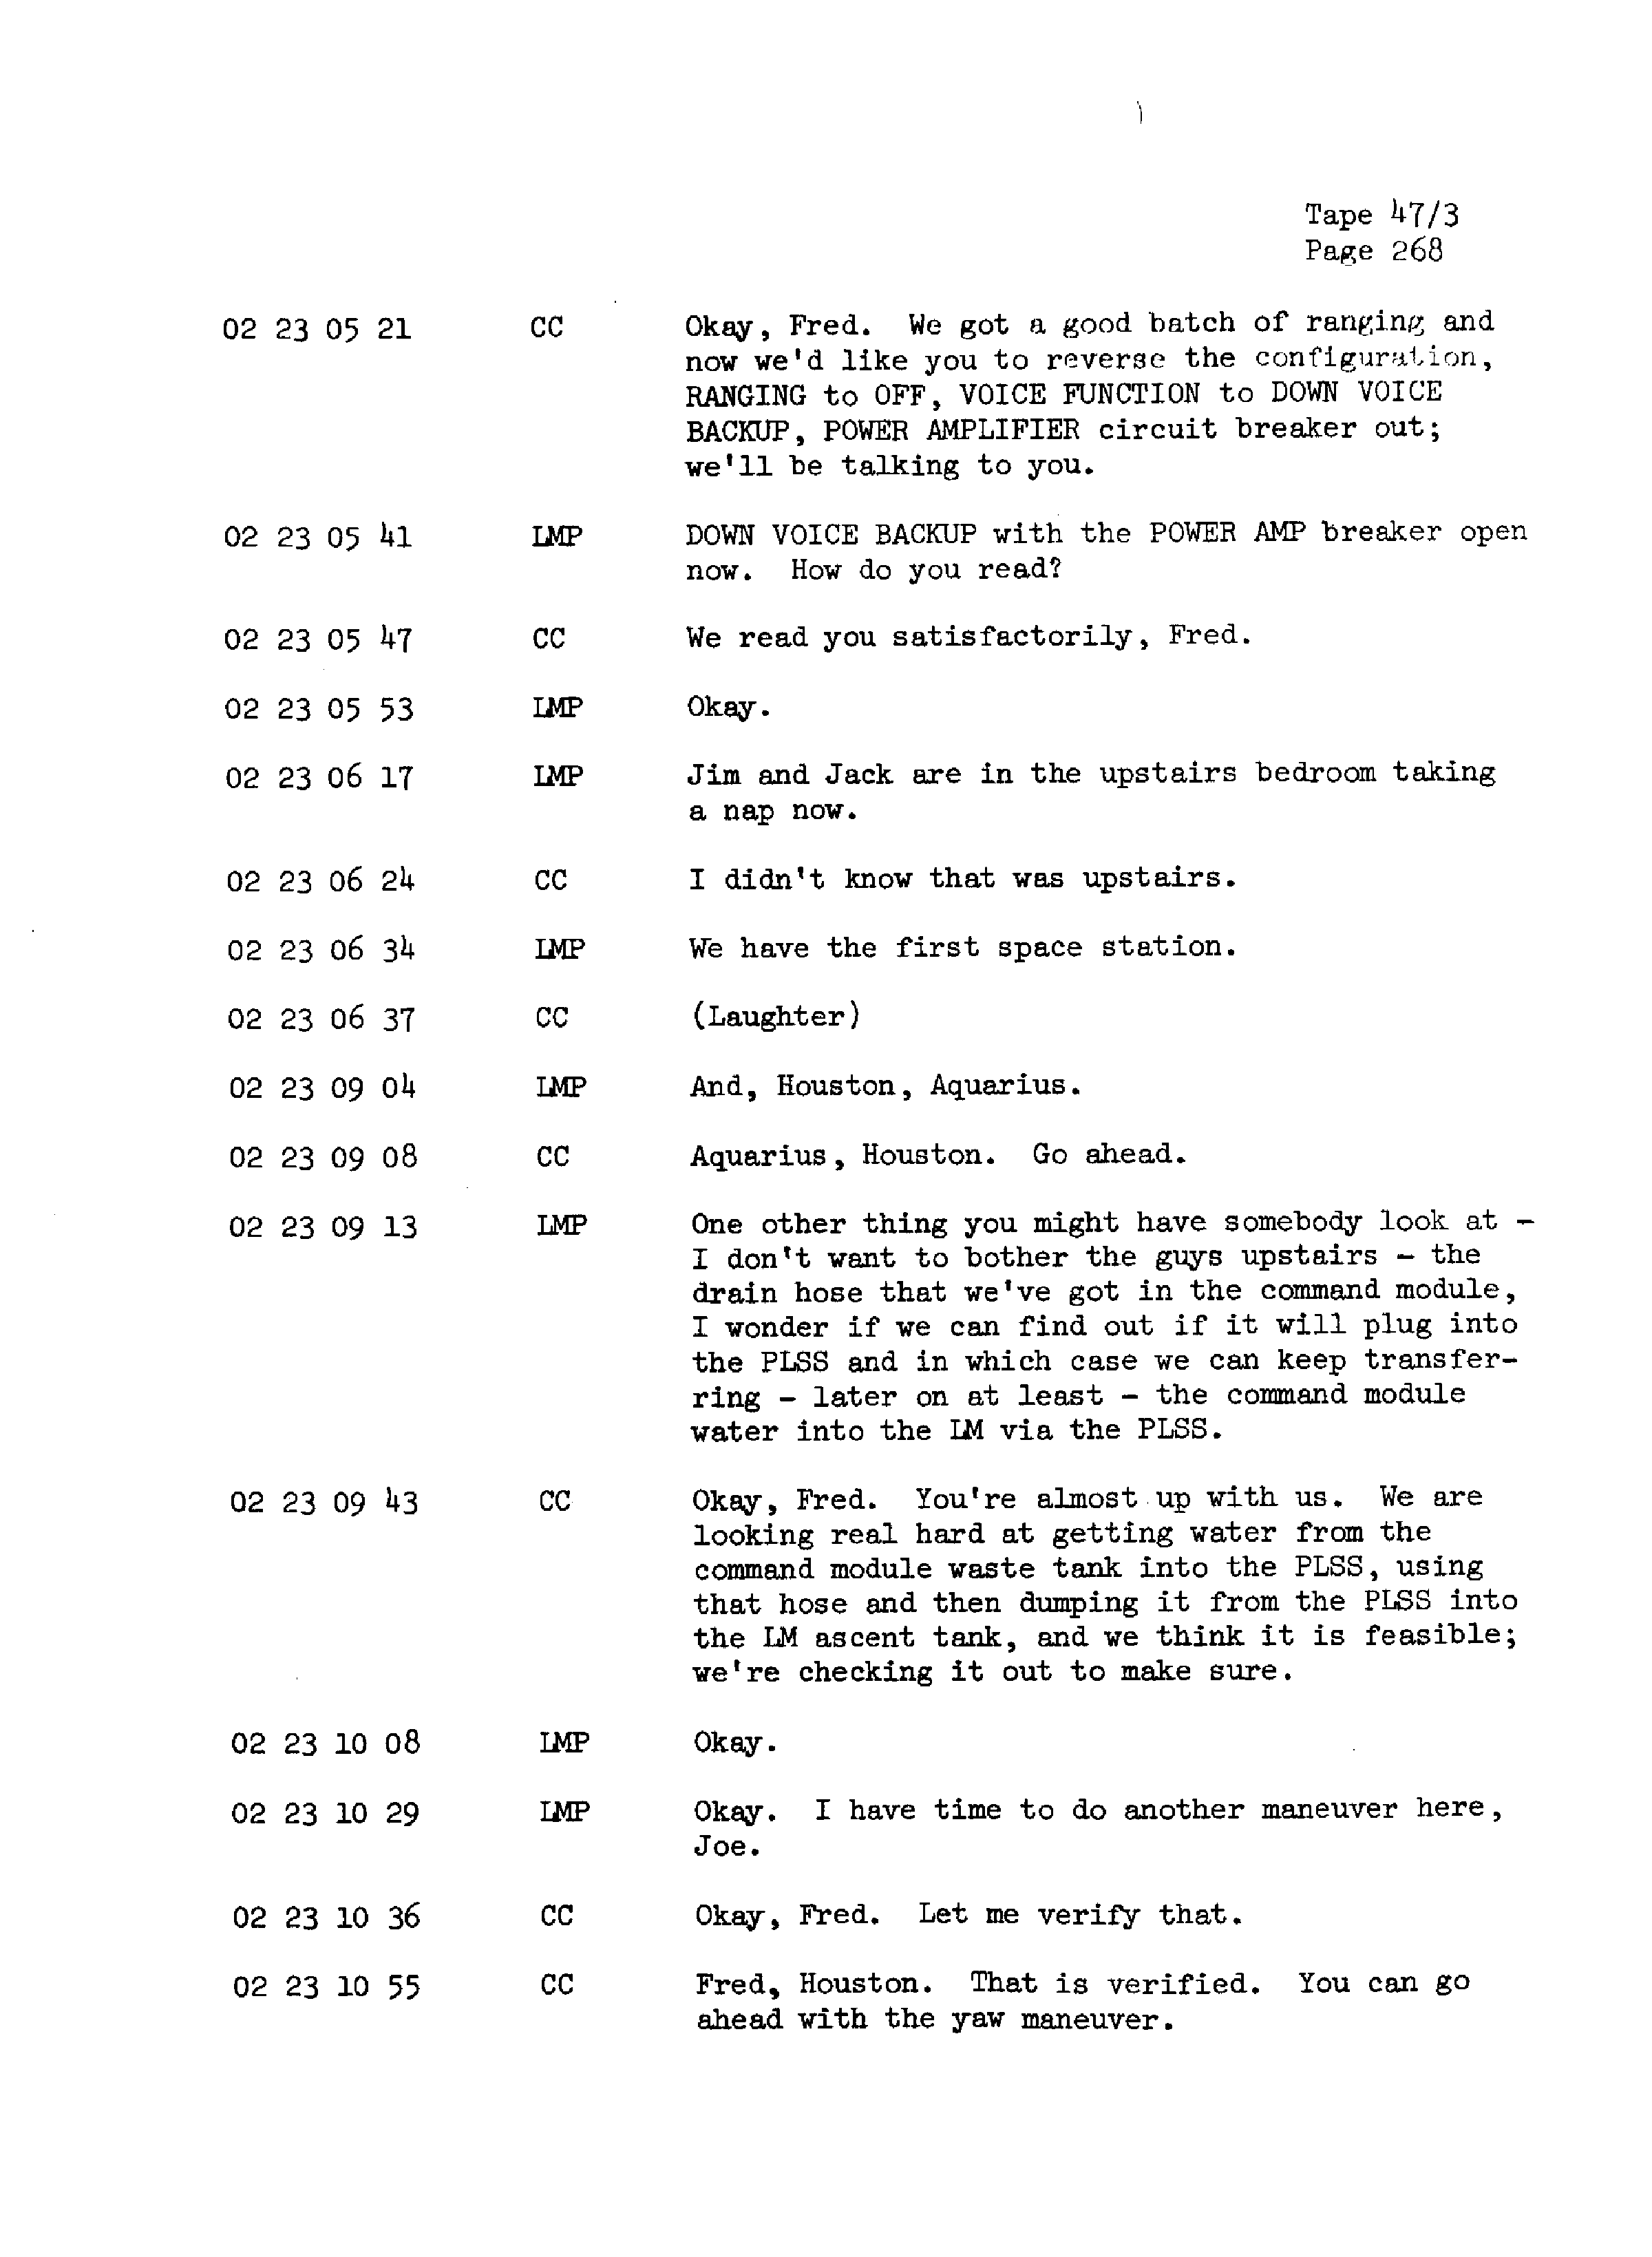 Page 275 of Apollo 13’s original transcript